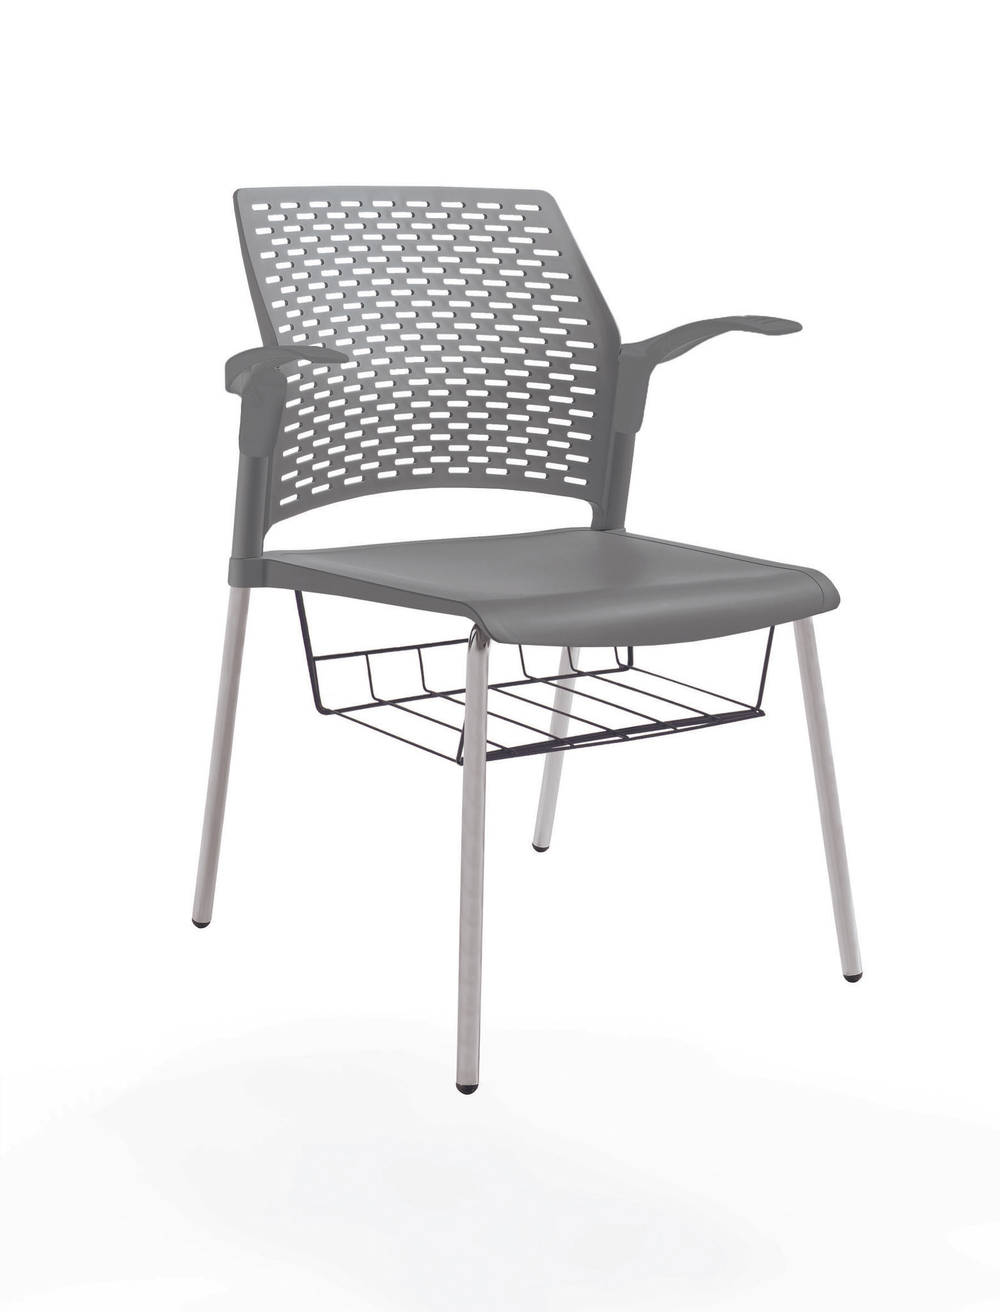 стул Rewind, каркас серый, пластик серый, с открытыми подлокотниками, с подседельной корзиной